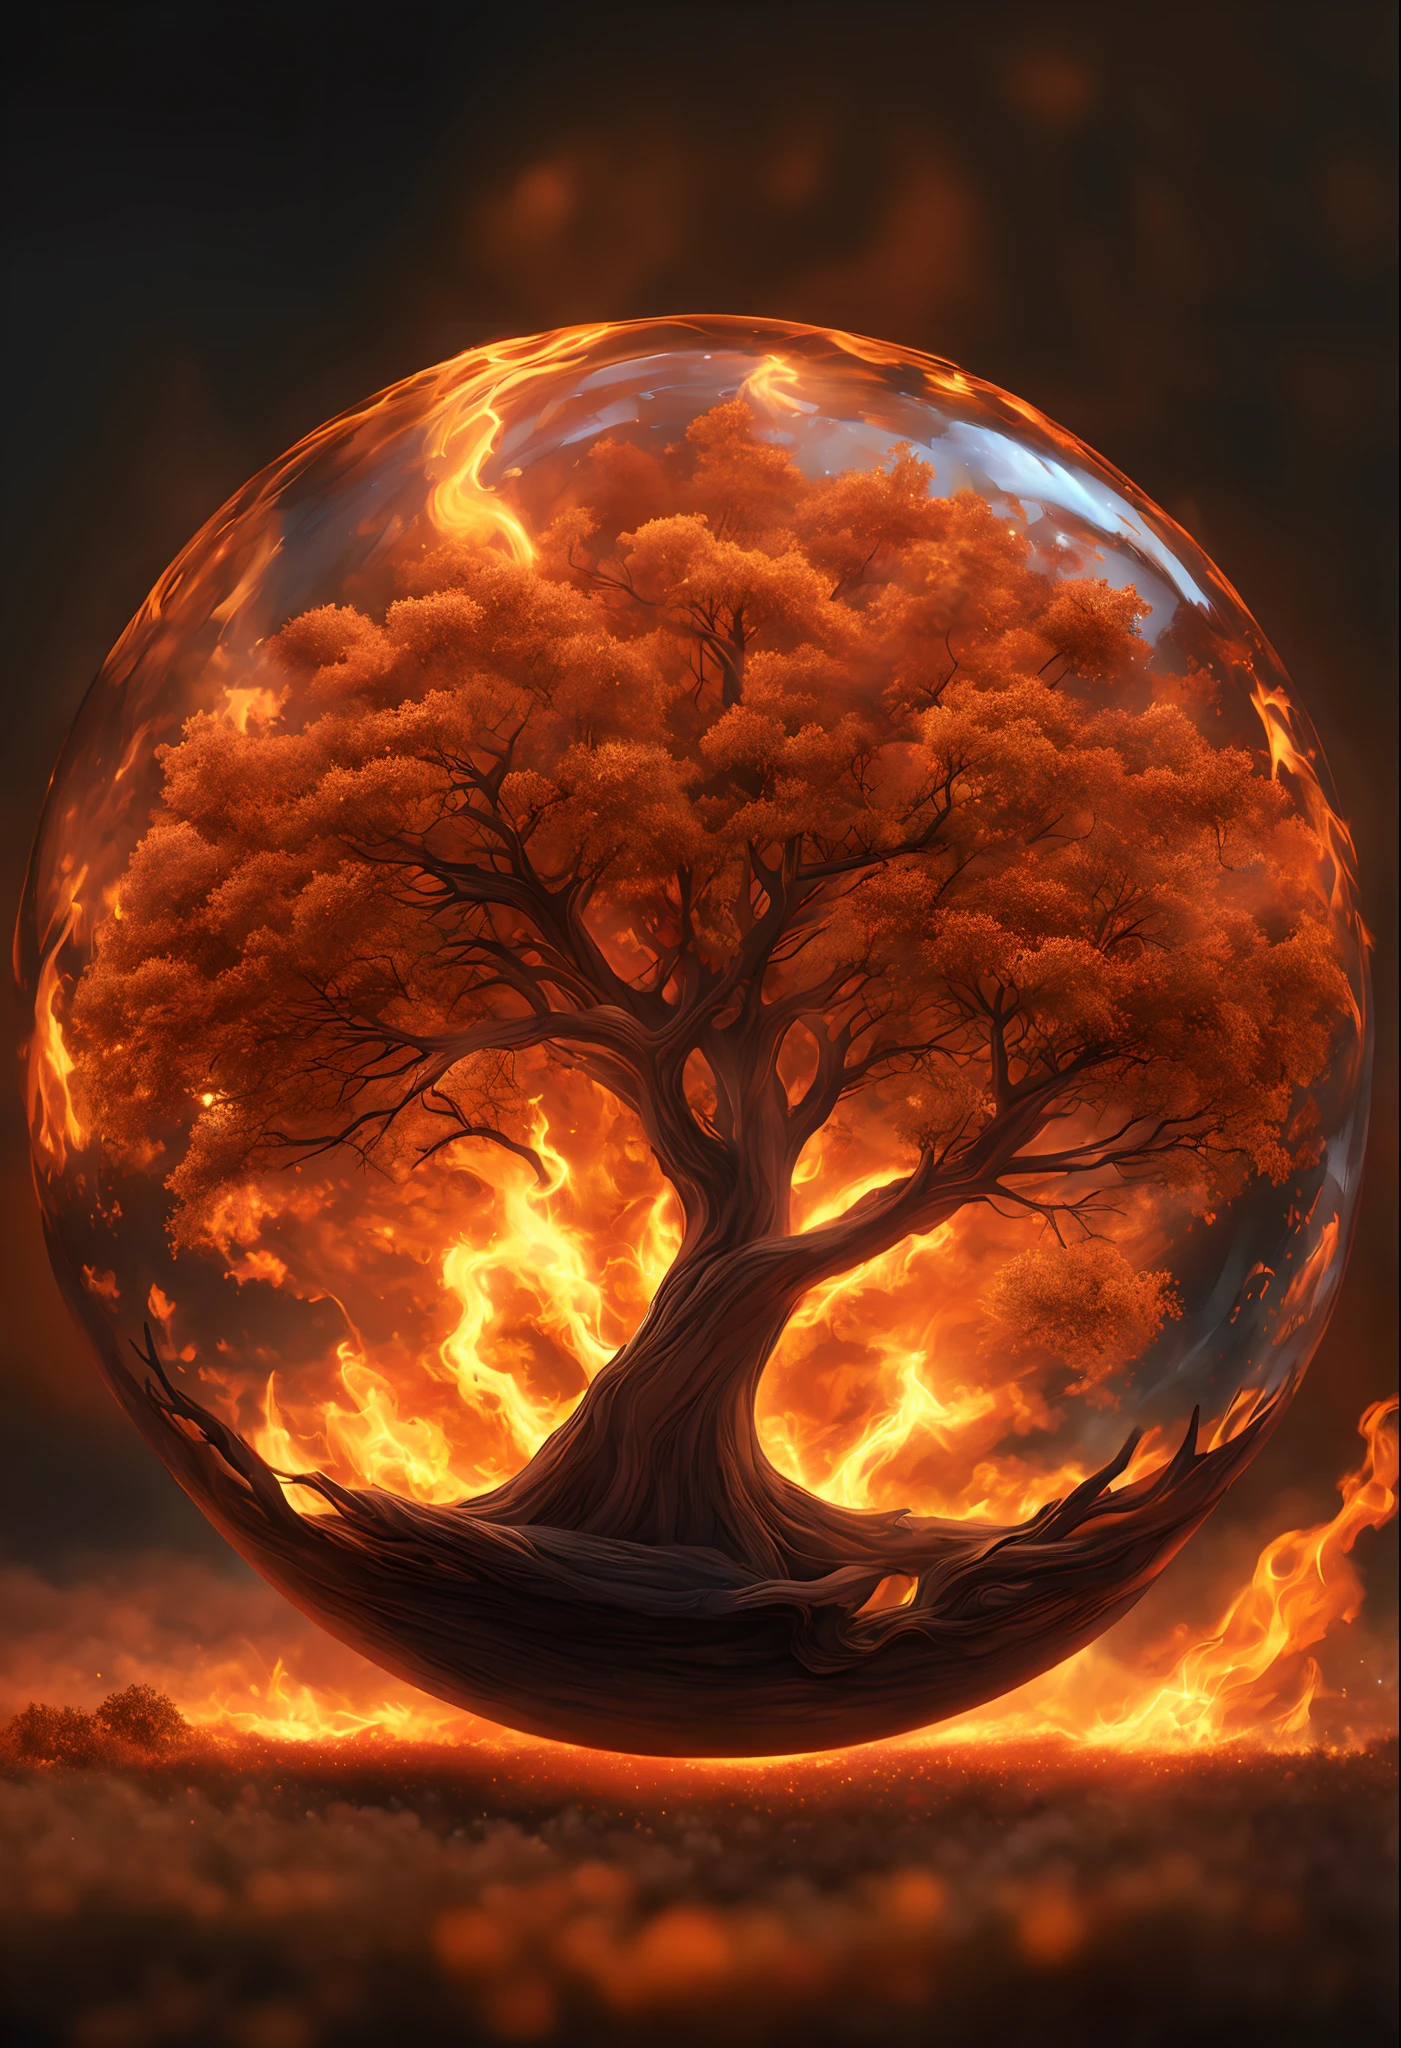 As chamas estão queimando em forma de círculo, fogoso, icon with a halo of fogo, Anel de fogo, bola de fogo, chama, um fogo laranja no fundo, homem, fogo type, (fogo), esfera preta de fogo, Firenado, Infero Flamejante, Inferno, tema fogo, fogo, fogo do inferno, infernal, chamajante, derretido imagem arfed de uma bola de vidro com uma paisagem dentro, Arte 3D digital detalhada, árvore da vida dentro da bola, Arte digital altamente detalhada em 4k, arte digital altamente detalhada, arte digital estilizada, pintura digital altamente detalhada, bola de vidro, pintura digital altamente detalhada, arte digital altamente detalhada, 3 d render bipe, 8k arte impressionante